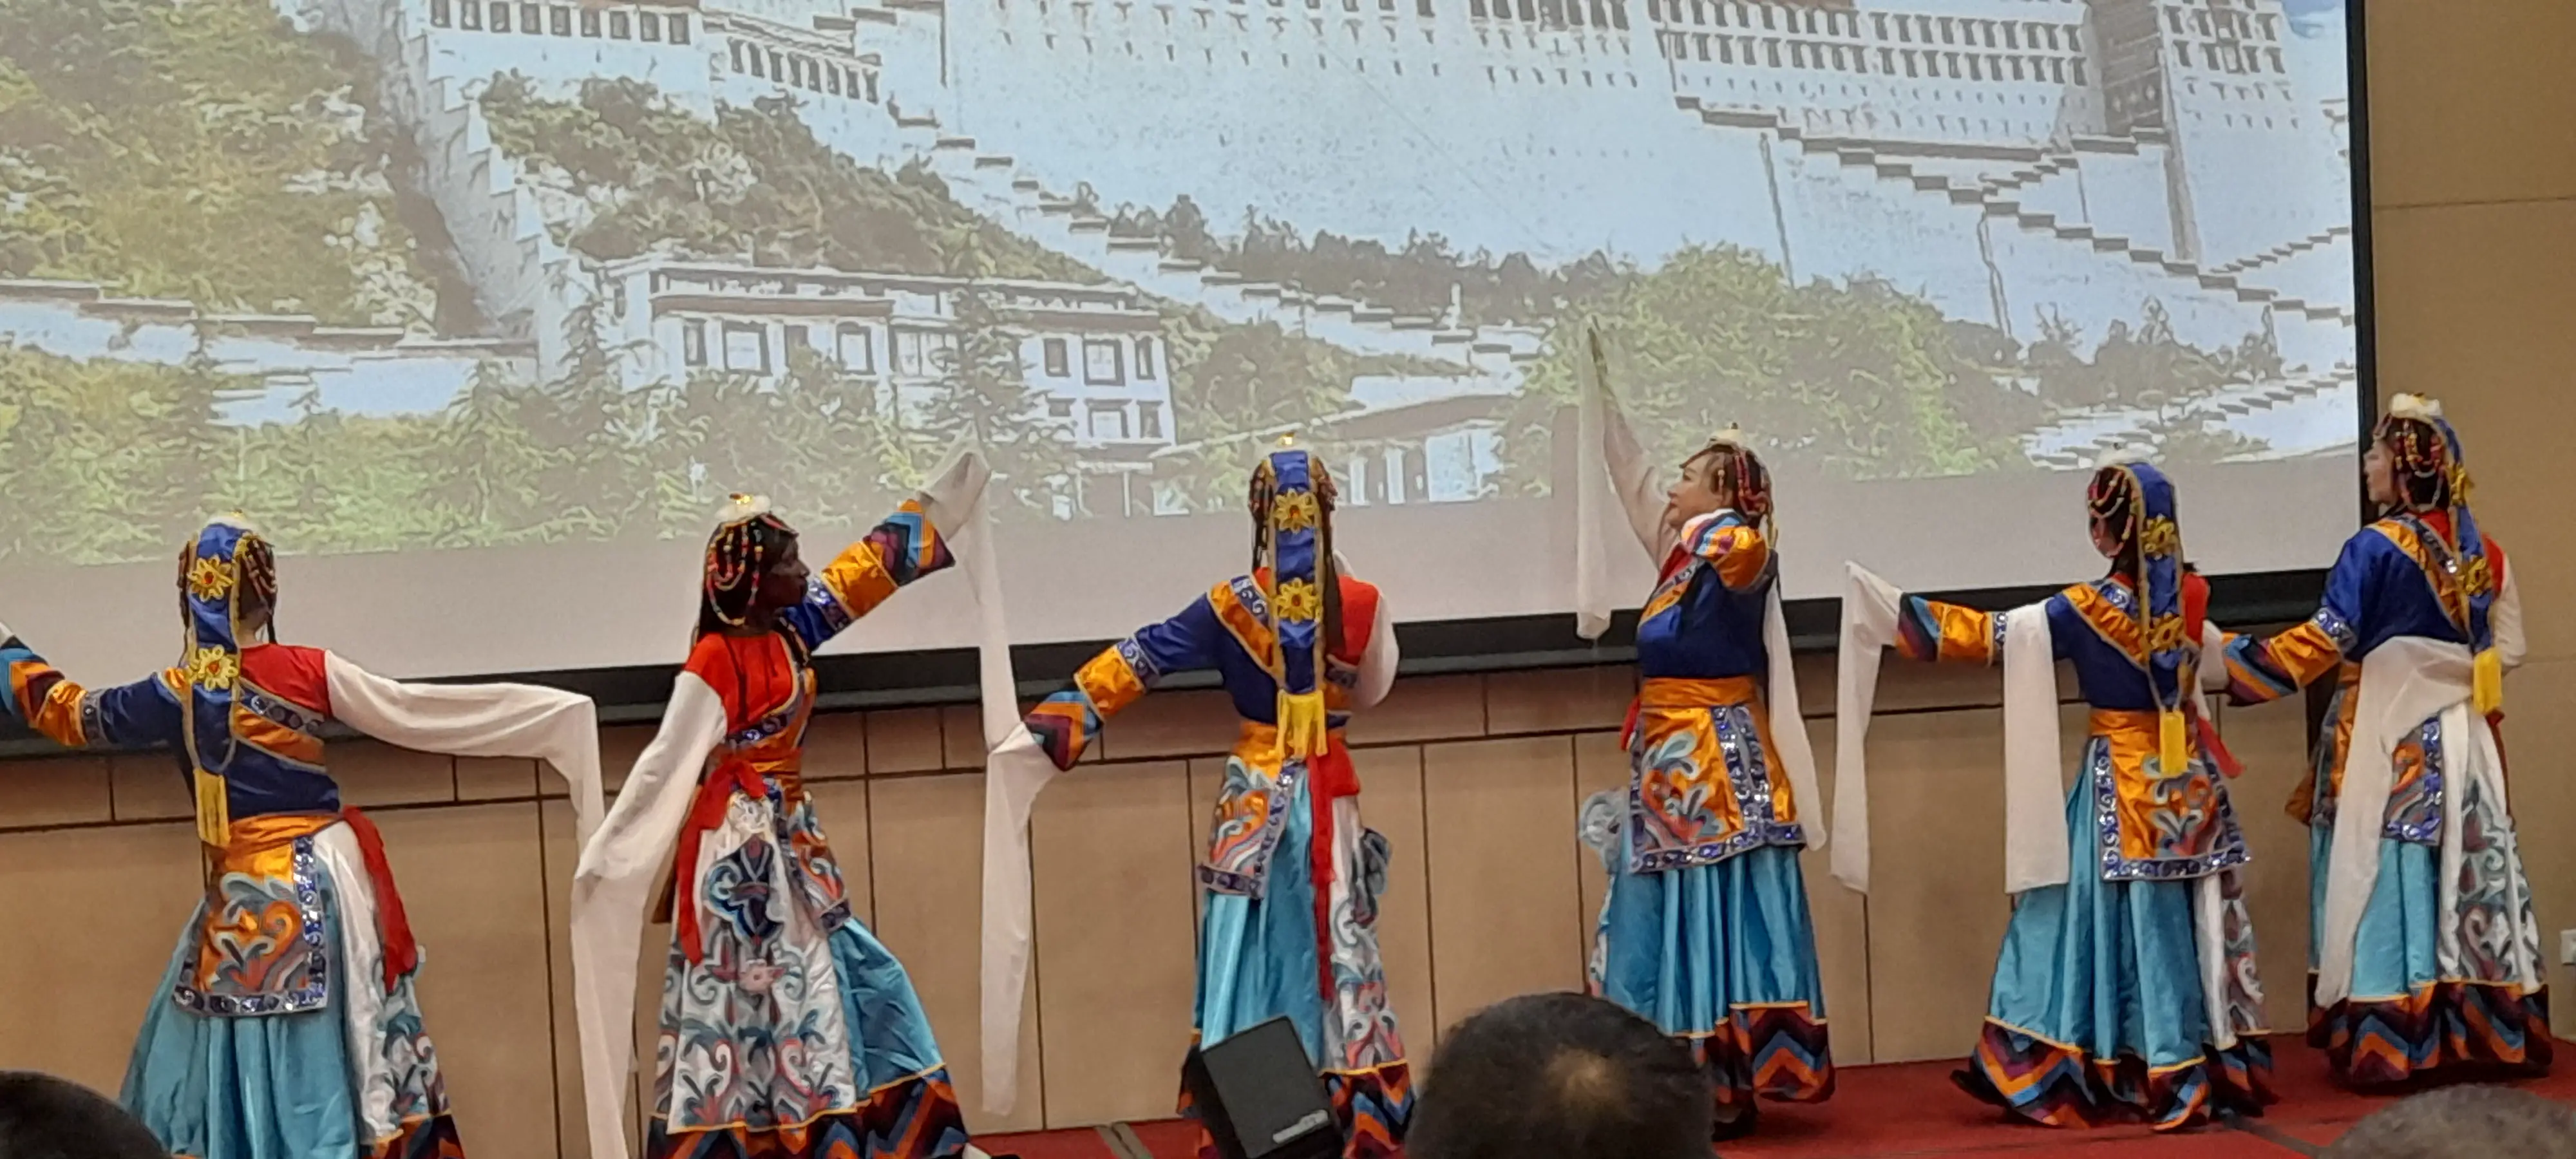 La Communauté chinoise au Tchad célèbre la fête des bateaux-dragons lors d'un salon culturel